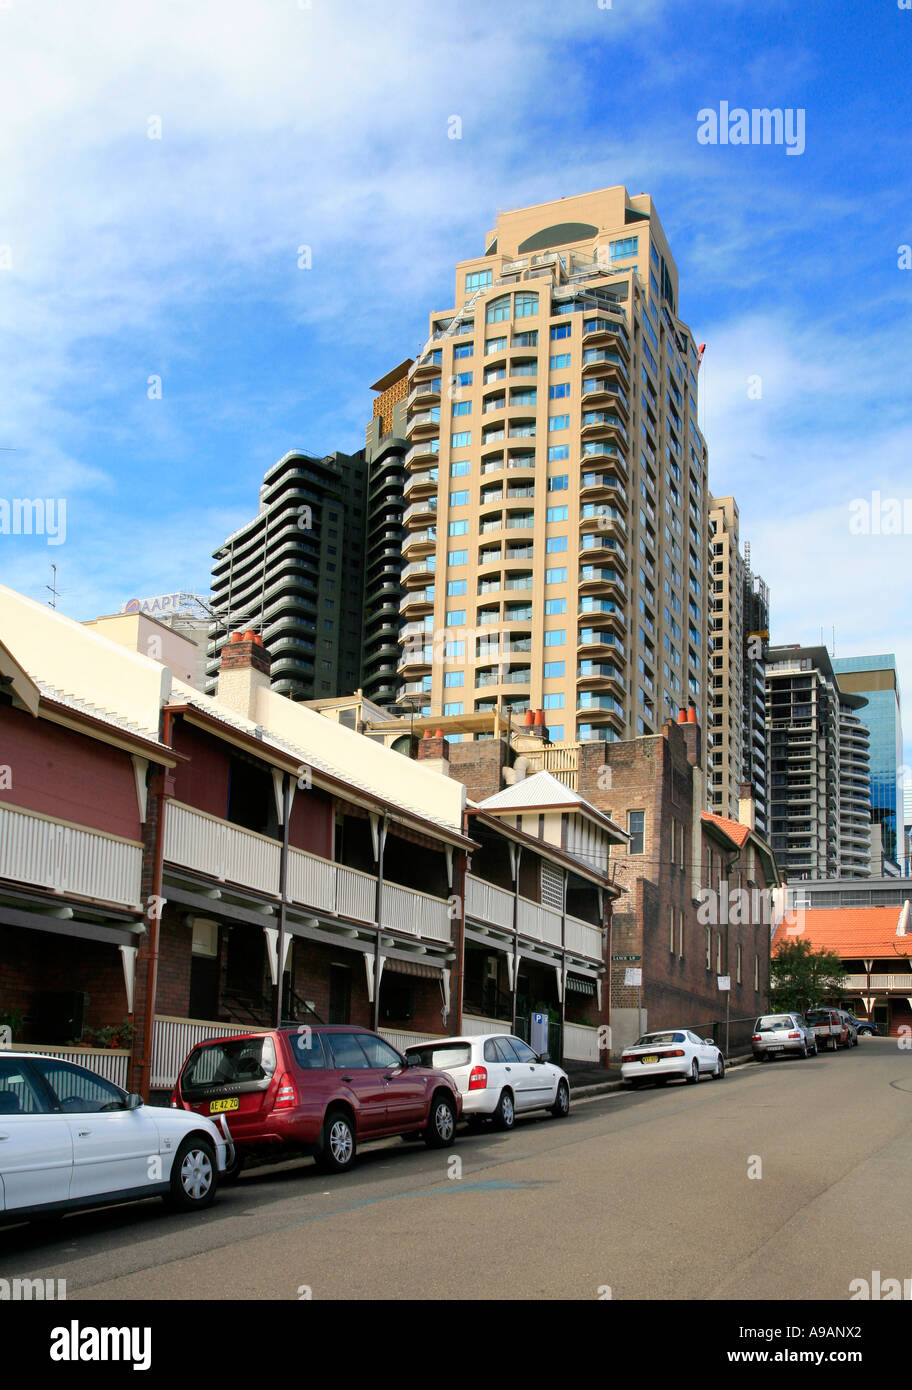 Appartamenti e alloggi pubblici della Sydney's area Rocks. Foto Stock